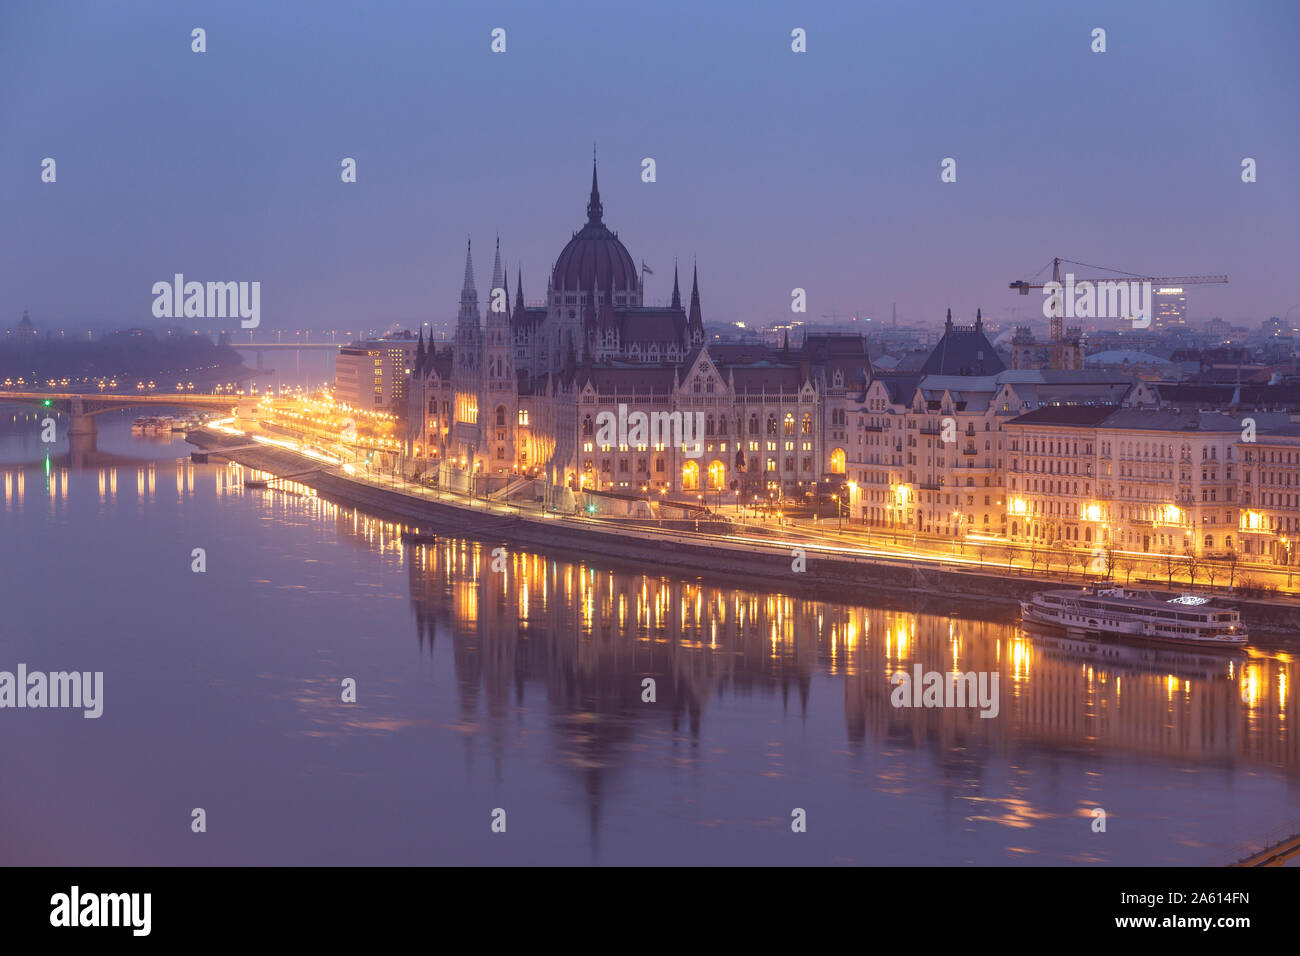 Das am Ufer der Donau, das ungarische Parlament Gebäude stammt aus dem späten 19. Jahrhundert, UNESCO, Budapest, Ungarn, Europa Stockfoto